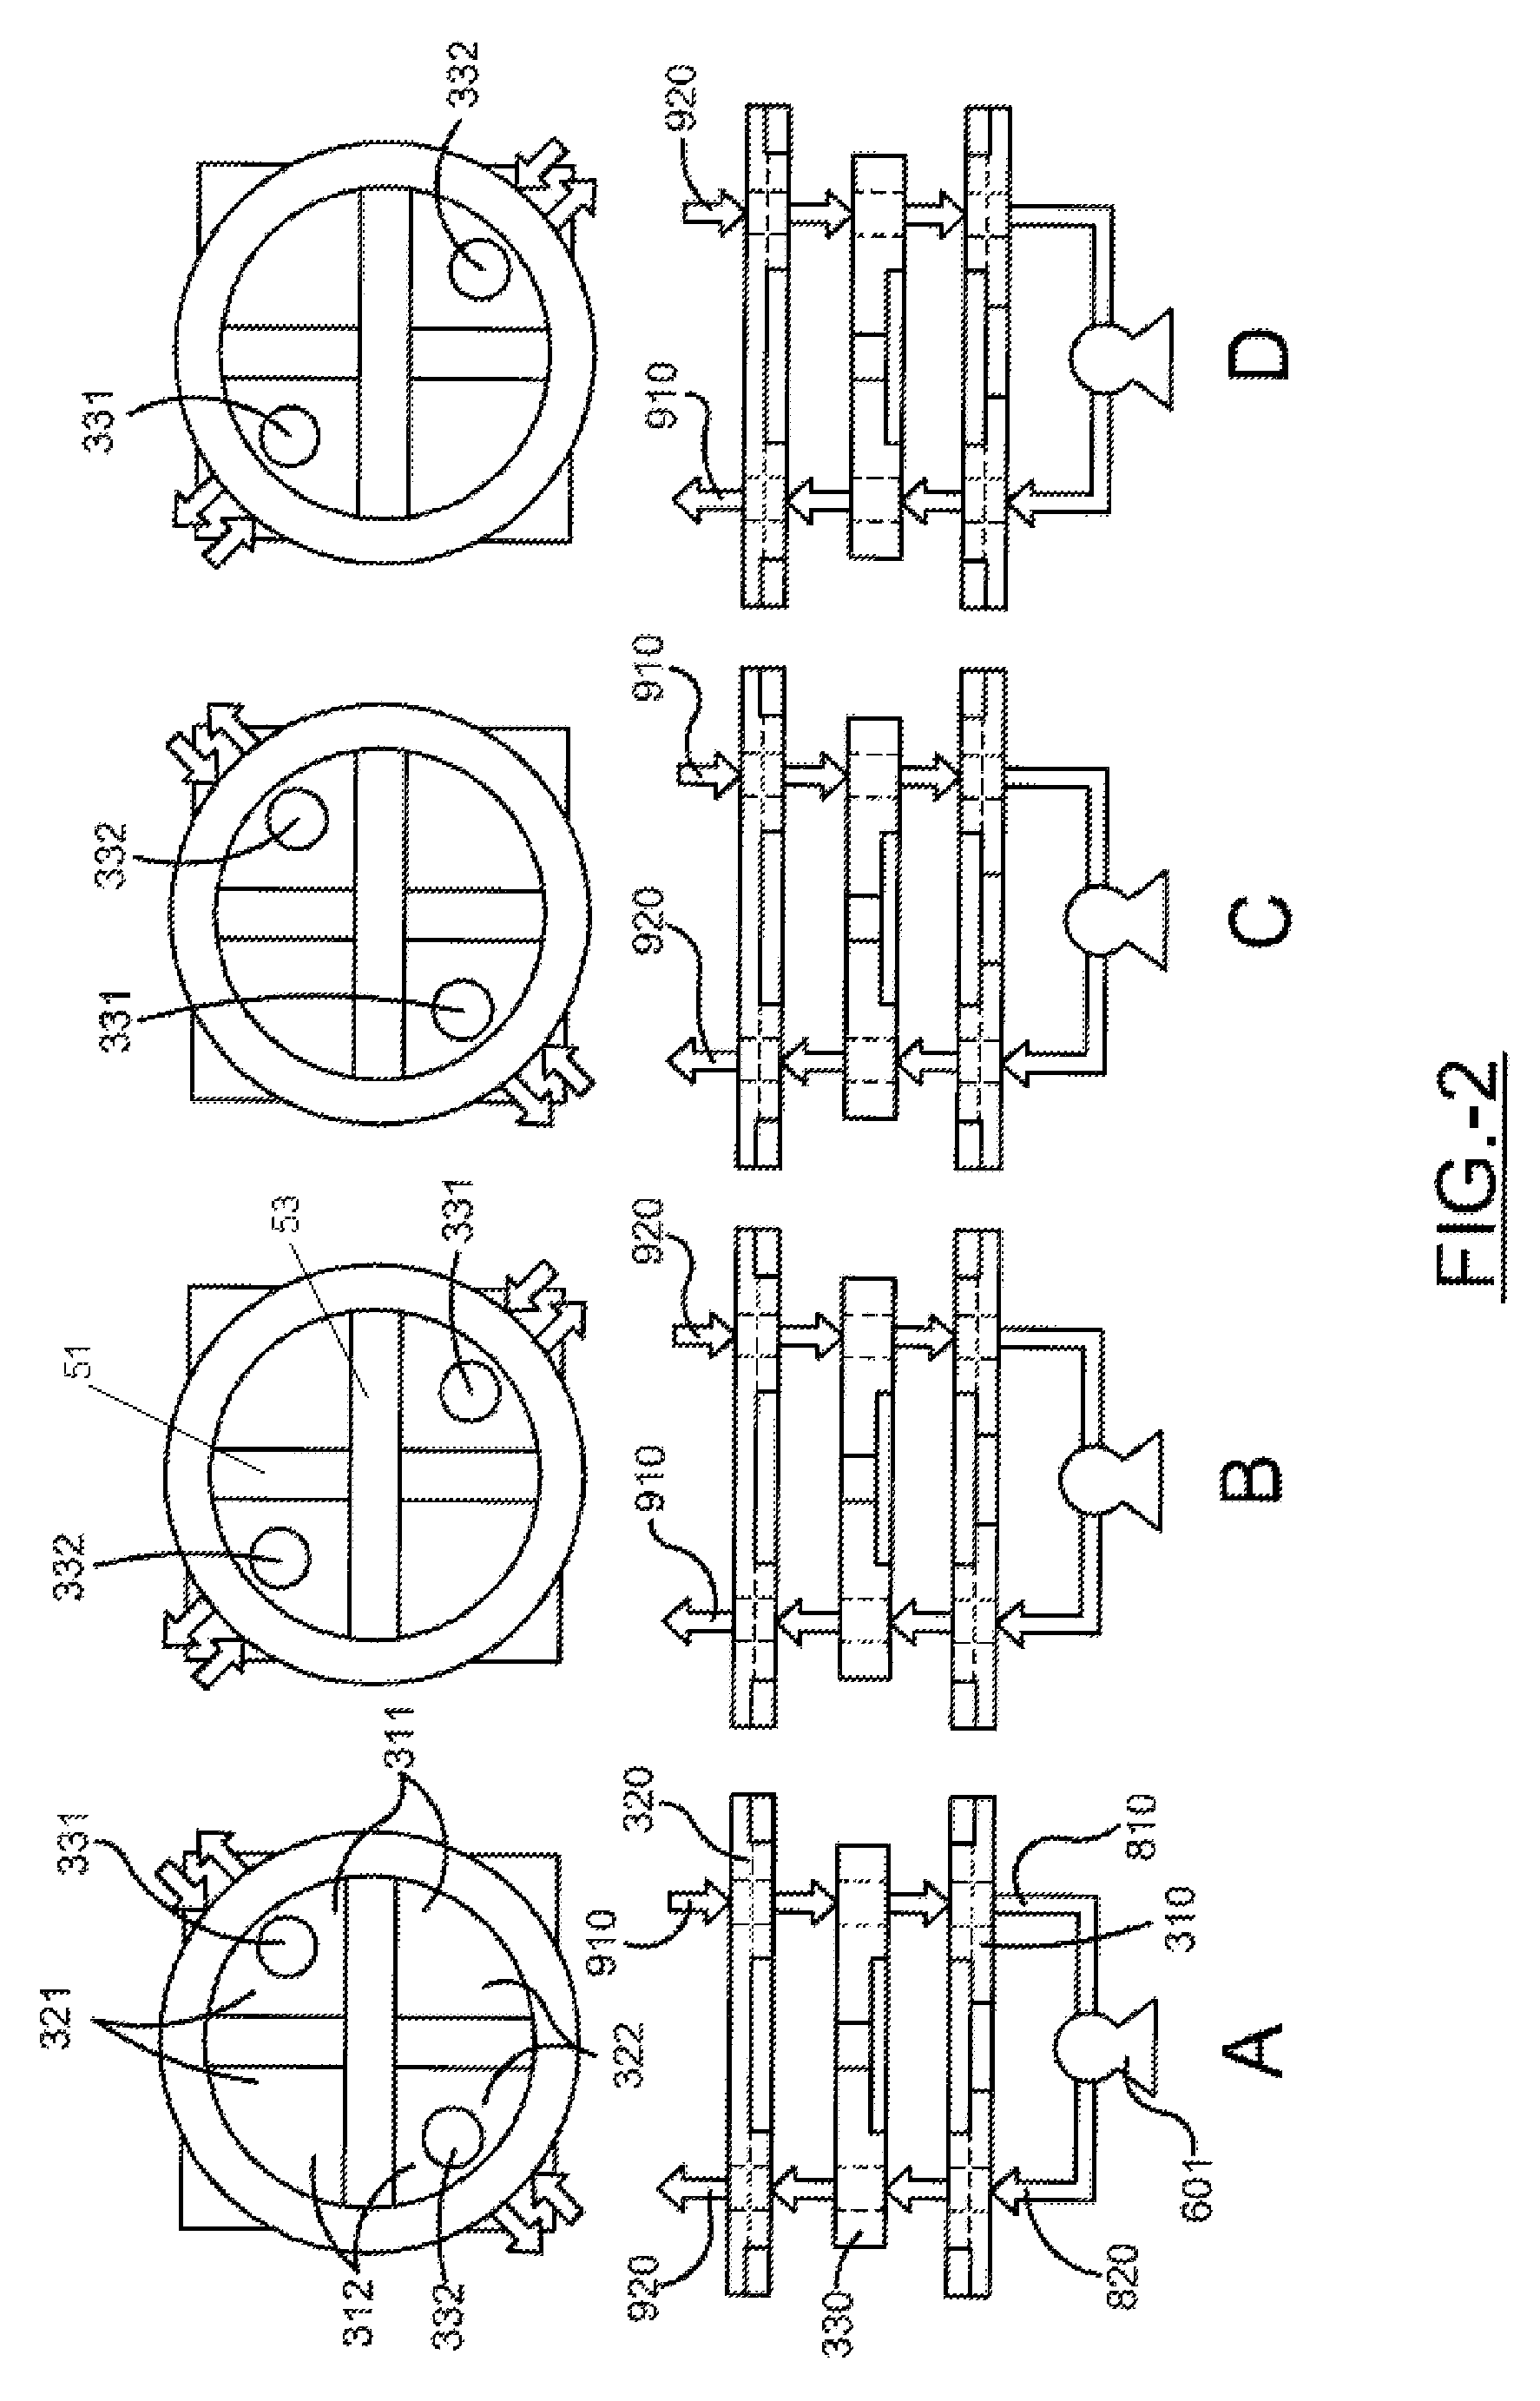 Rotary valve assembly